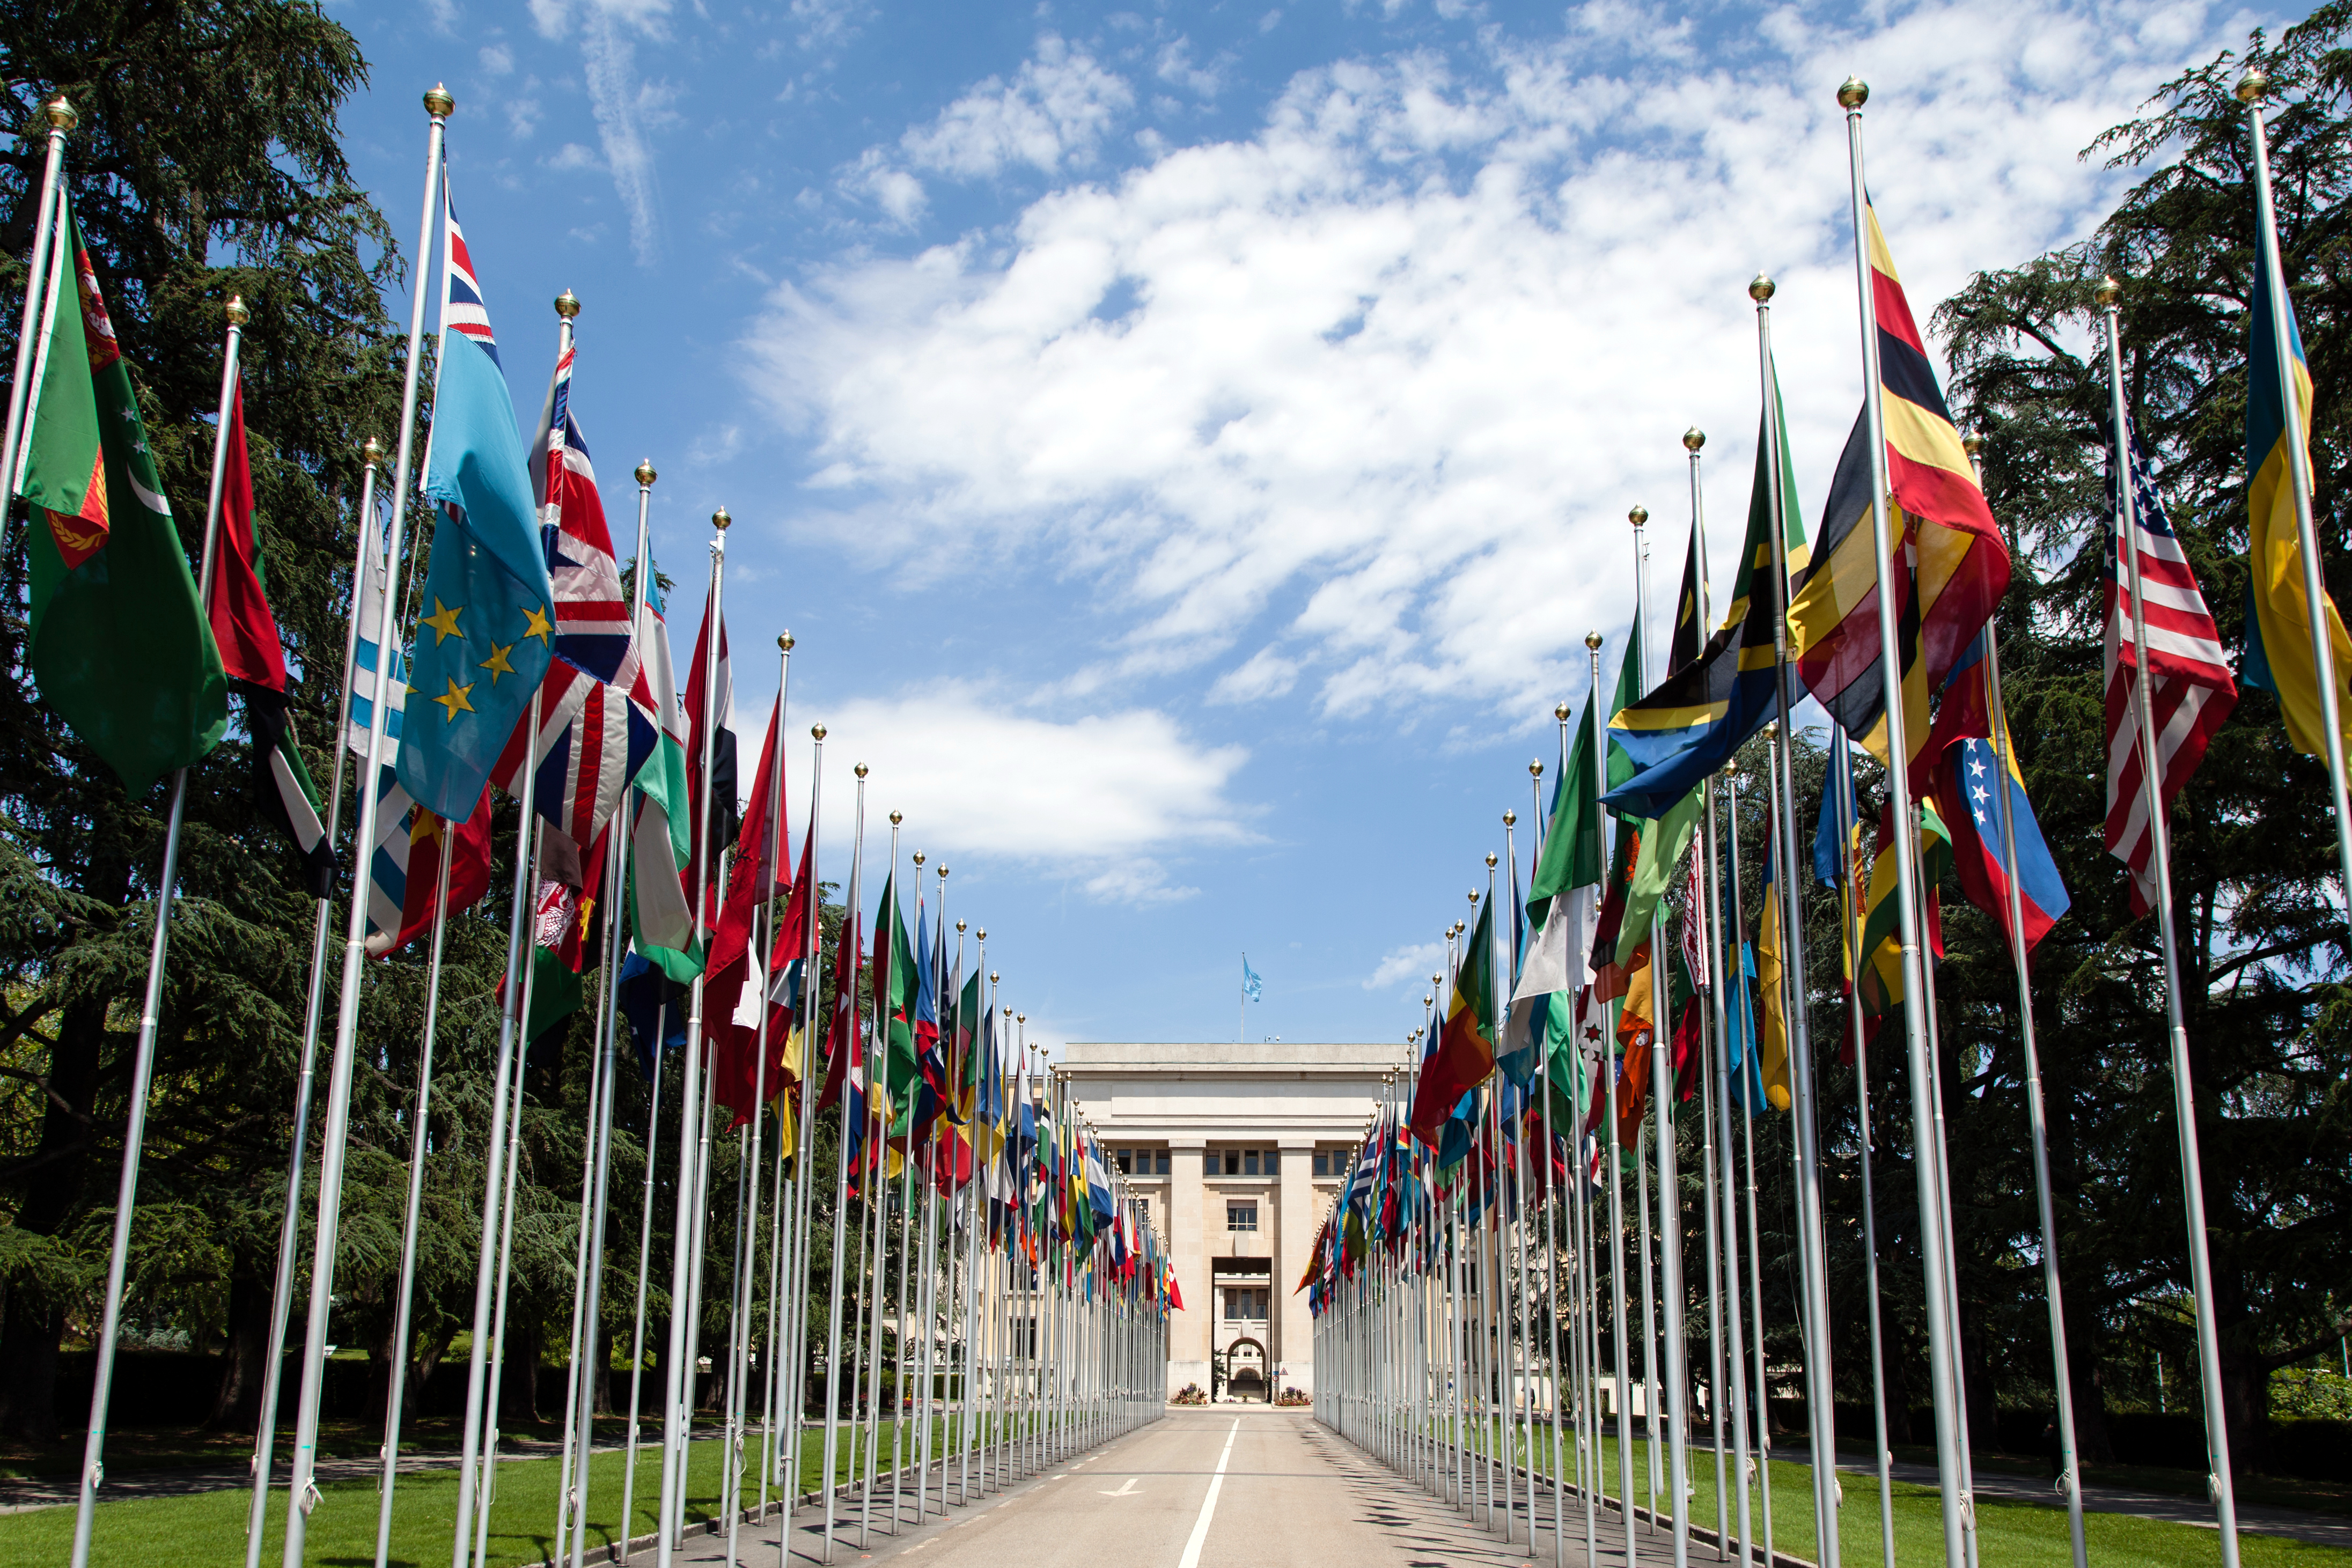 Trụ sở Liên Hợp quốc - United Nations Office - Geneva - Thụy Sỹ